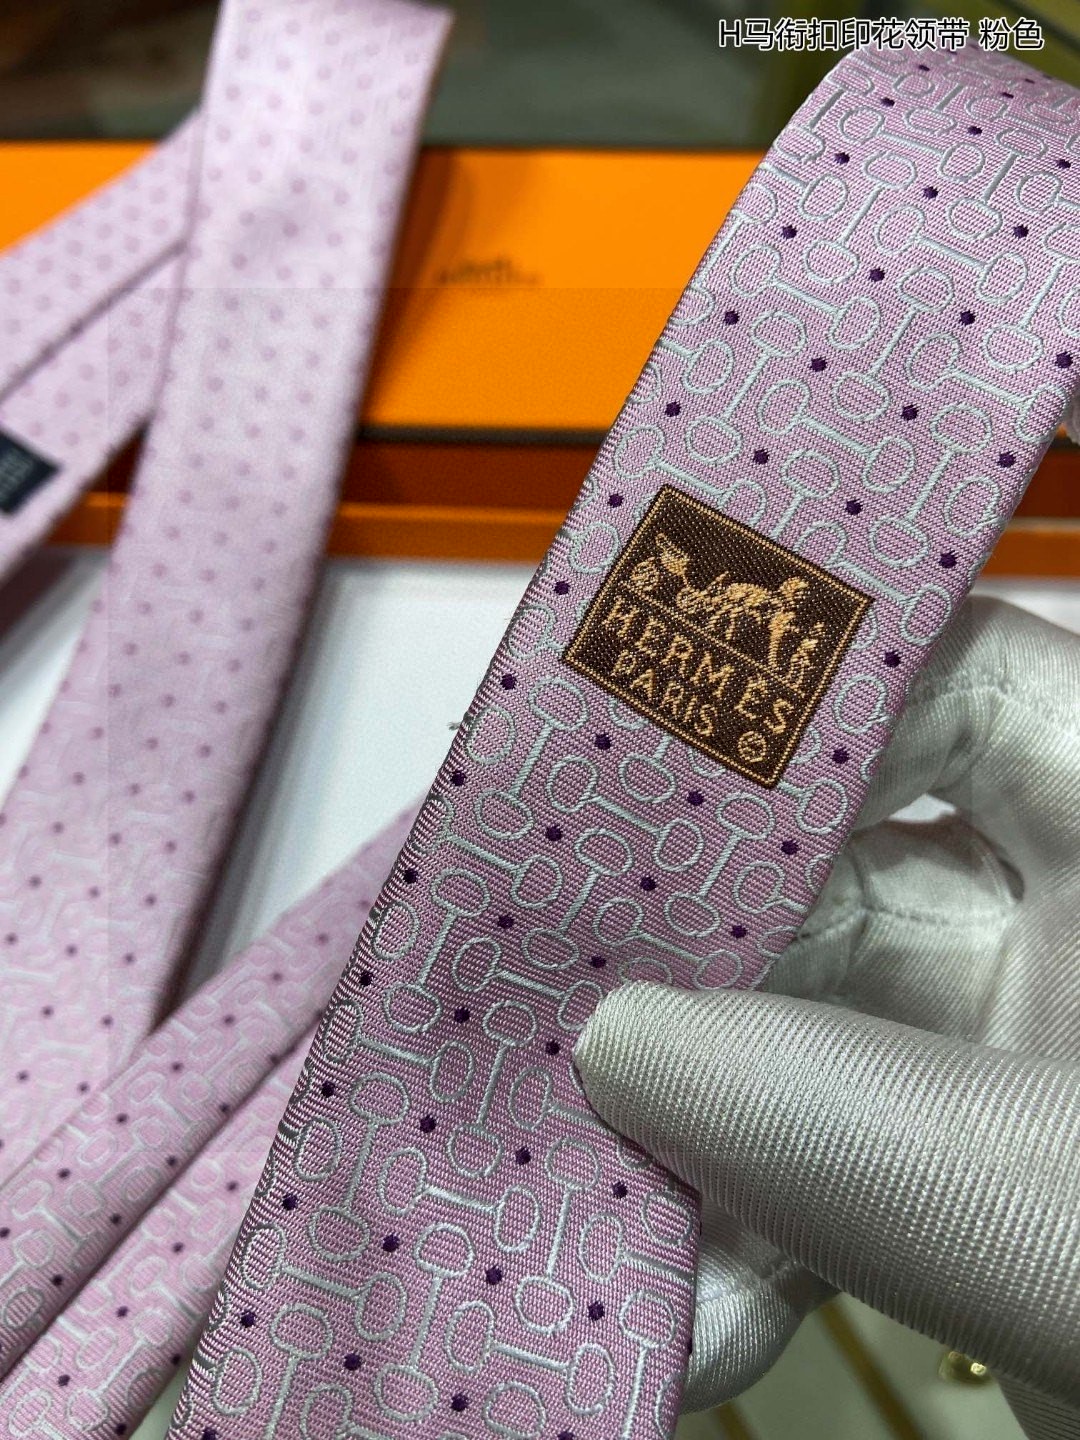 男士新款领带系列H马衔扣印花领带稀有H家每年都有一千条不同印花的领带面世从最初的多以几何图案表现骑术活动